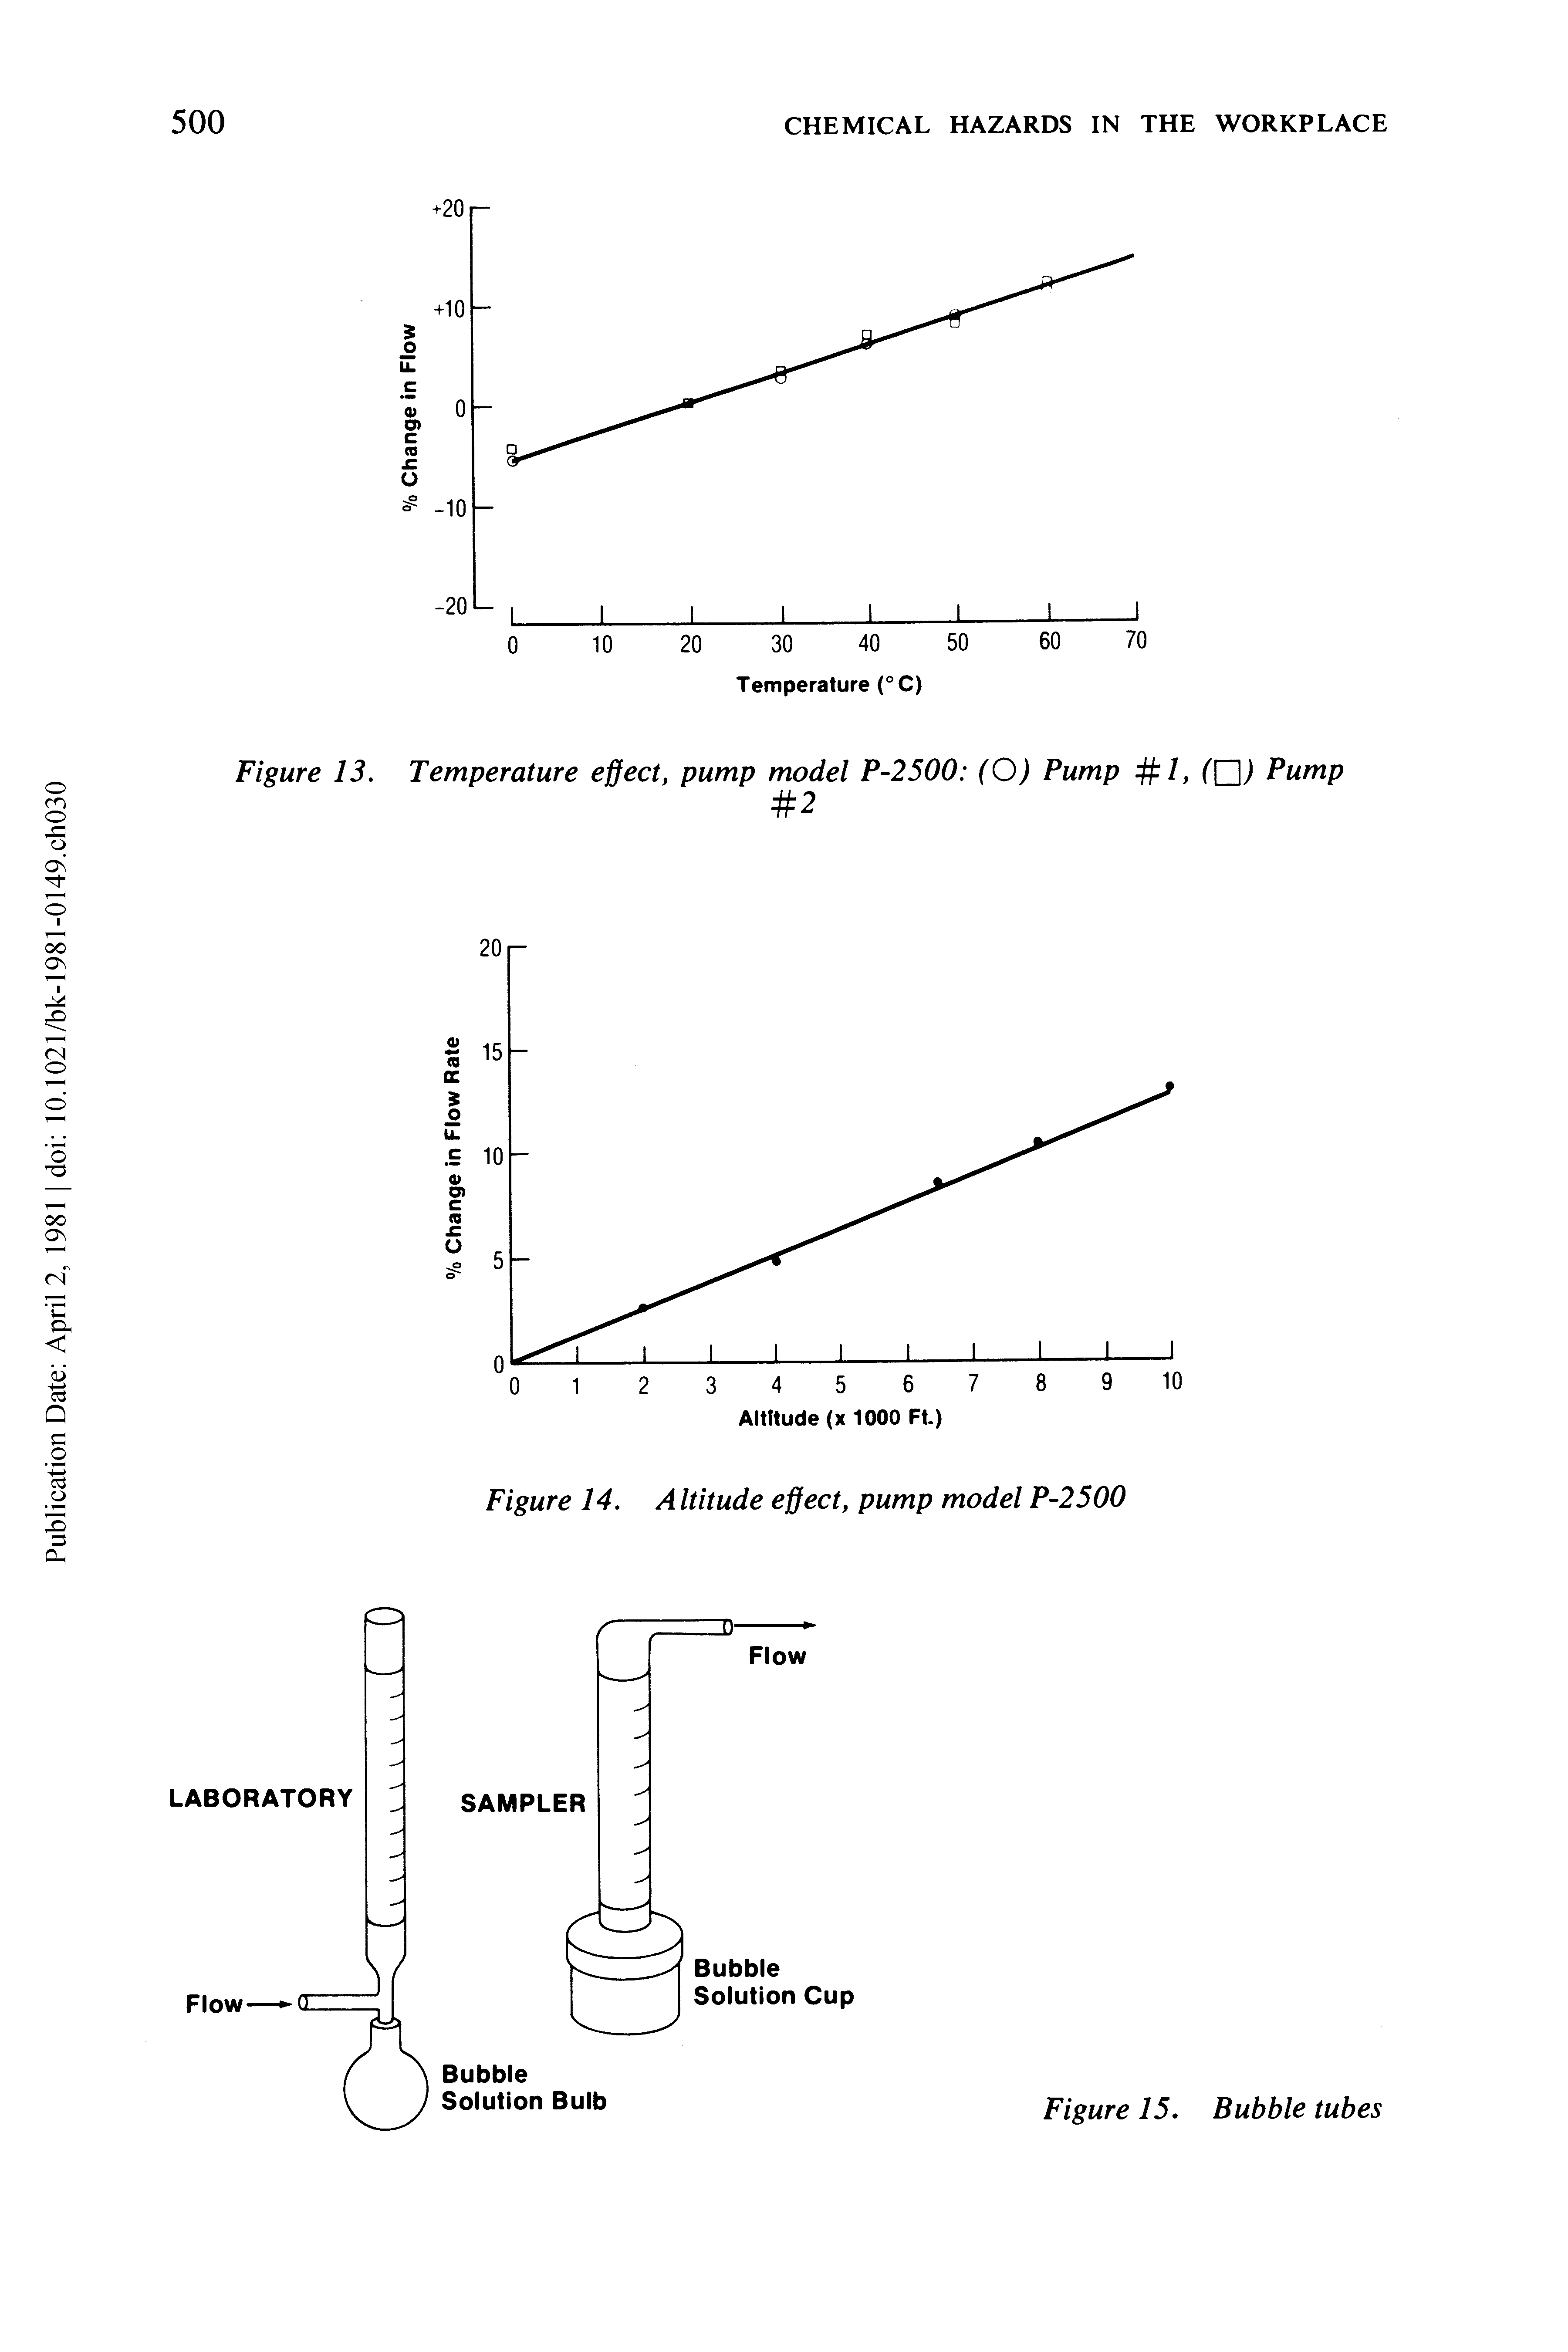 Figure 13. Temperature effect, pump model P-2500 (O) Pump /, Pump...